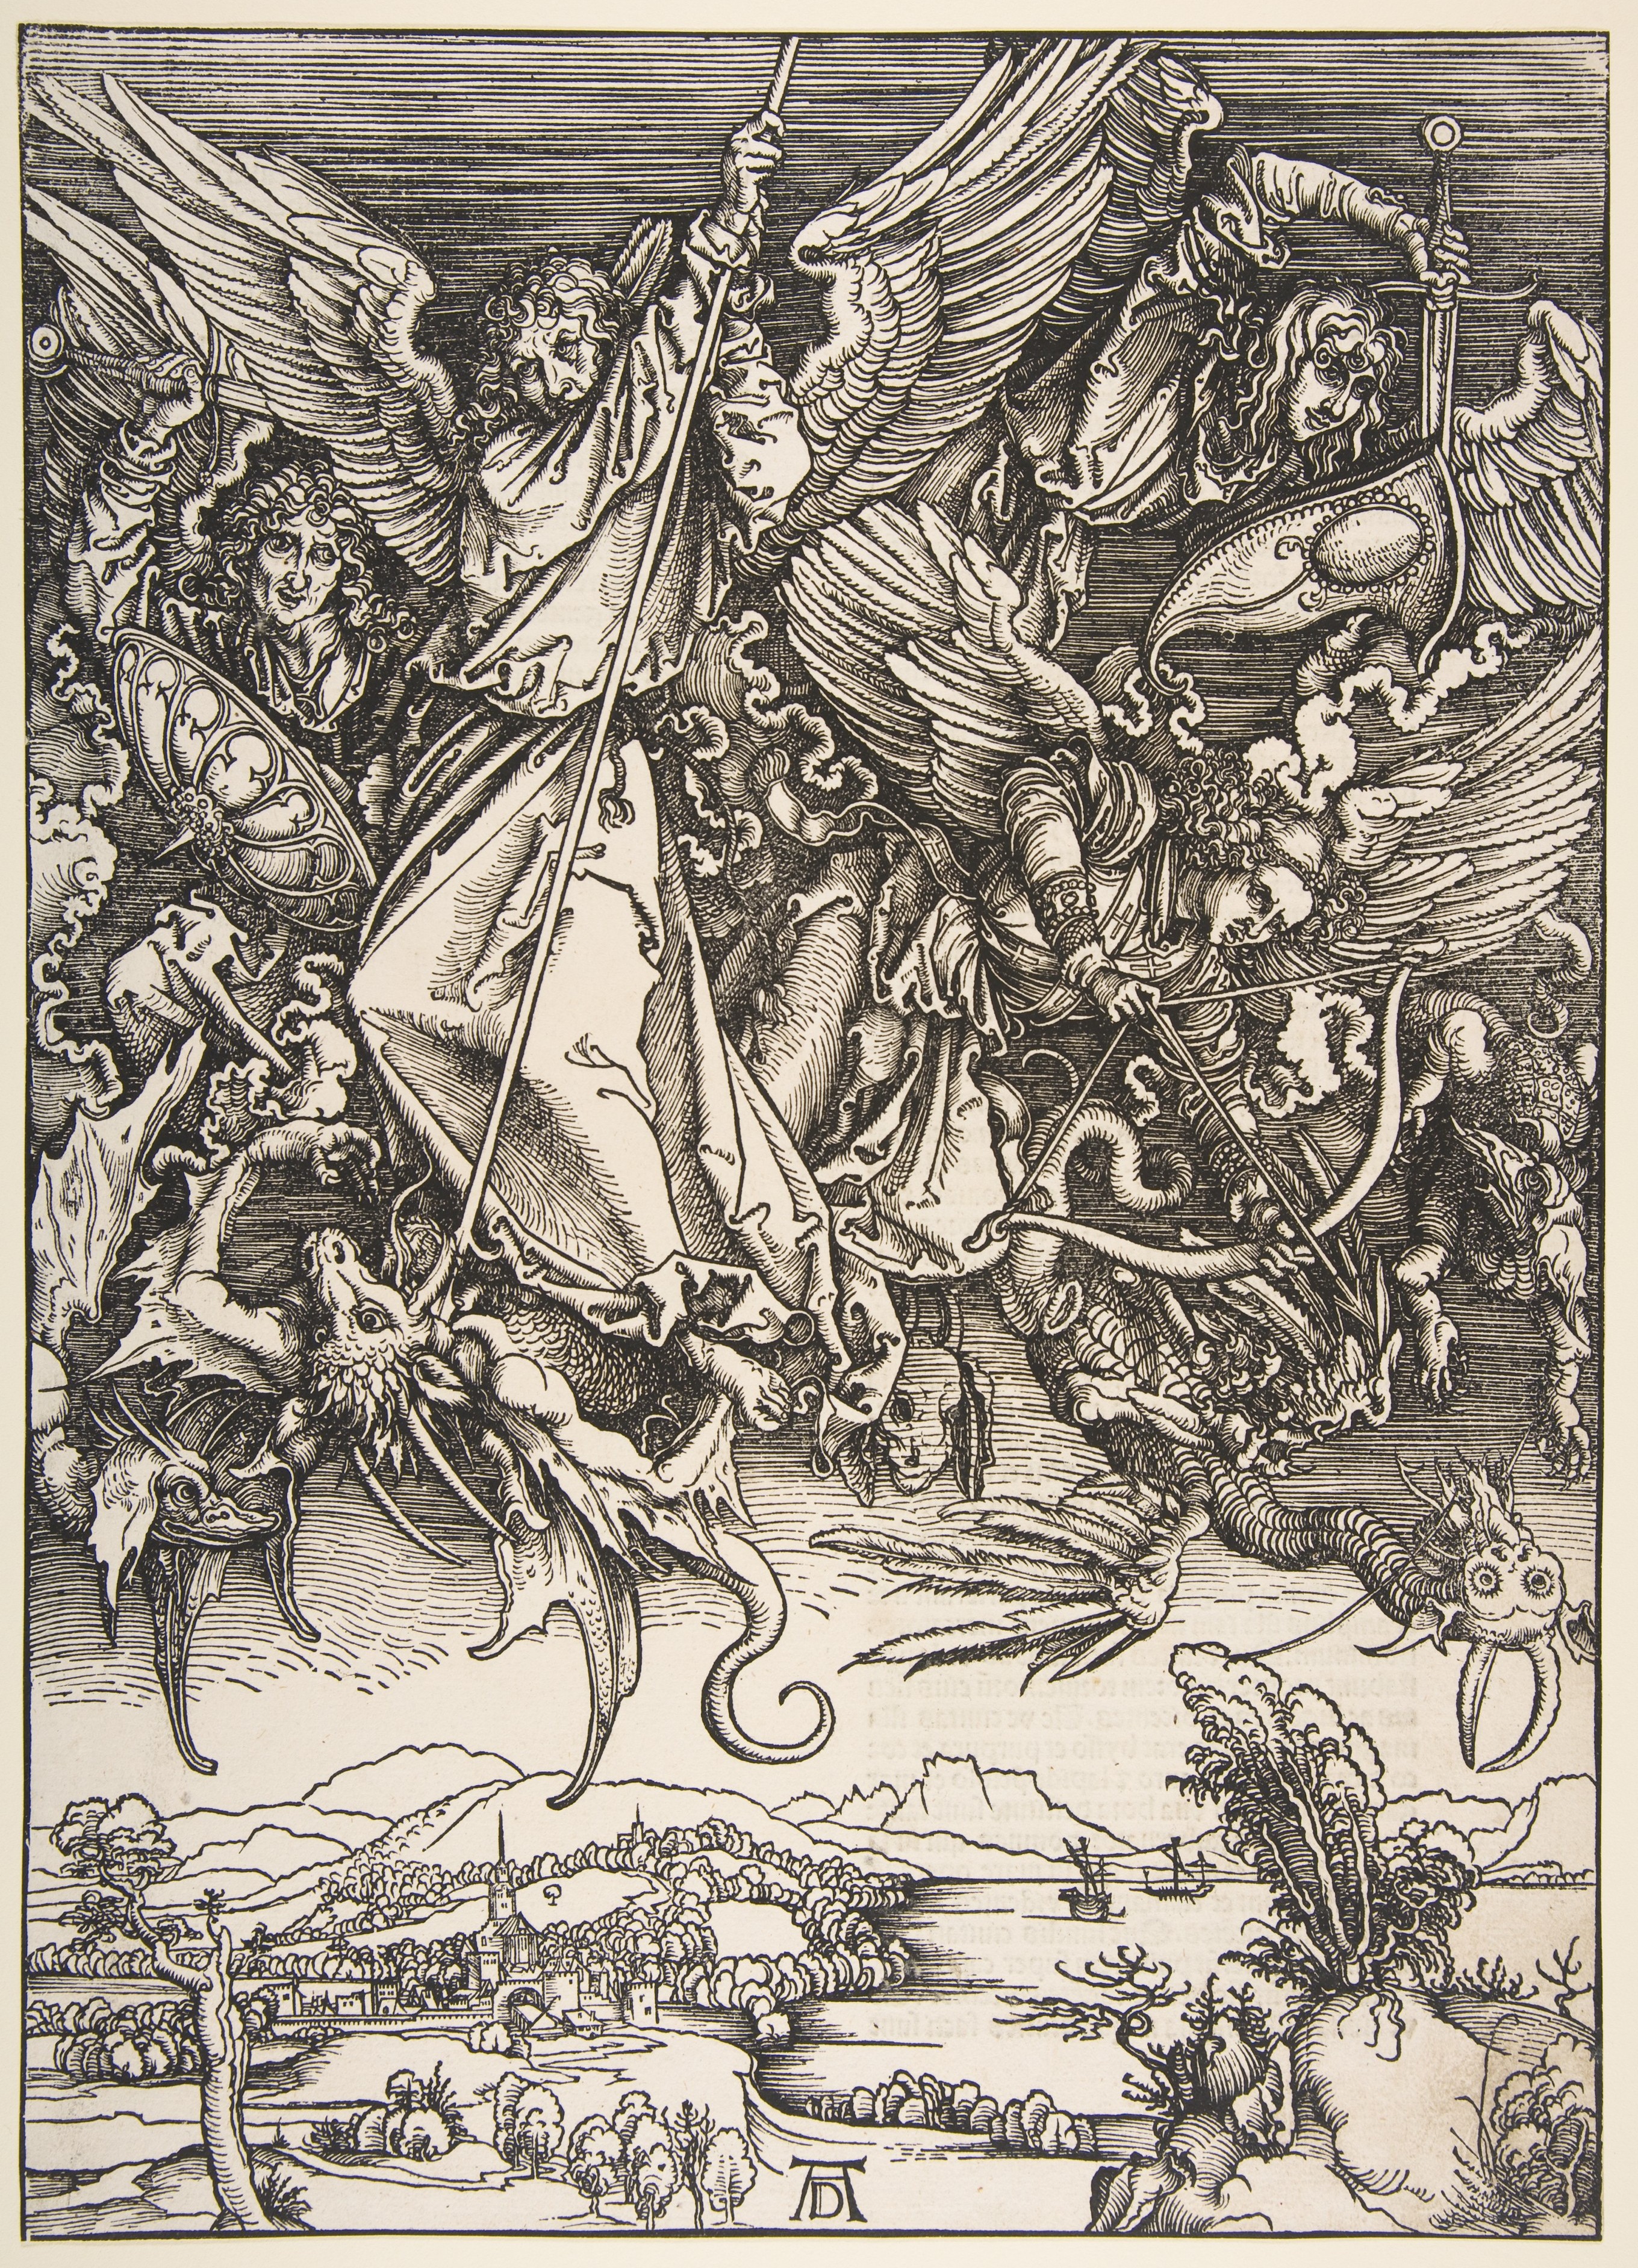 聖米迦勒鬥龍 by Albrecht Dürer - 約 1496 年至 1498 年，印刷於 1511 年 - 39.1 x 28 釐米 